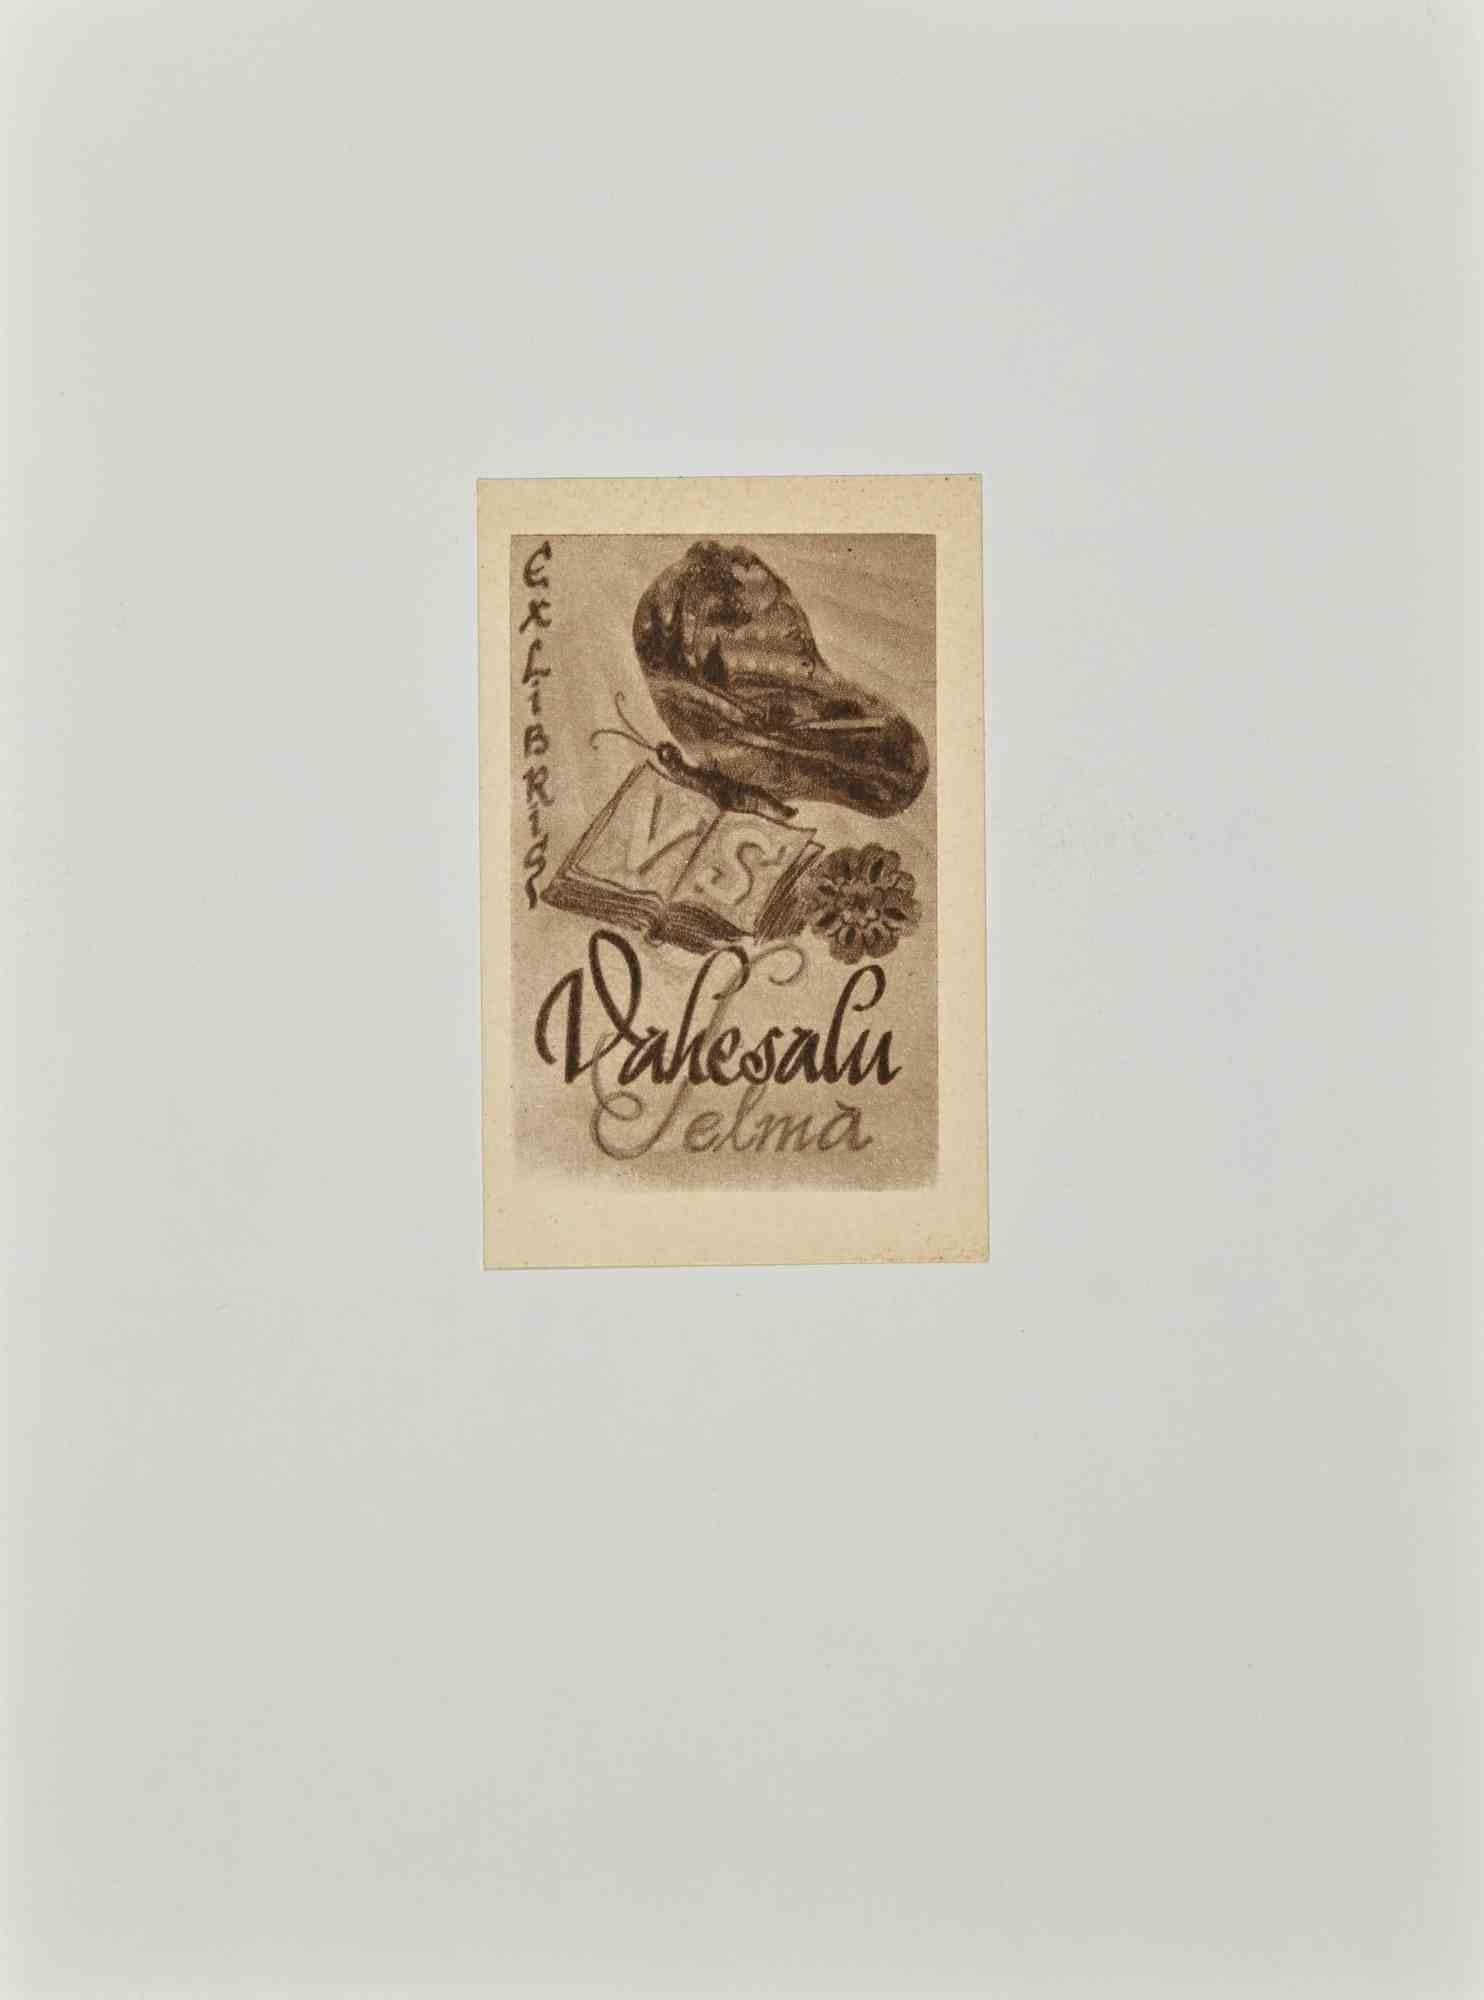 Ex Libris - Vakesalu Selma ist ein modernes Kunstwerk von Erich Lindemann aus dem Jahr 1957.

Ex Libris. S/W-Holzschnitt auf Elfenbeinpapier. Handsigniert und datiert auf der Rückseite.

Das Werk ist auf Karton geklebt.

Abmessungen insgesamt: 20x